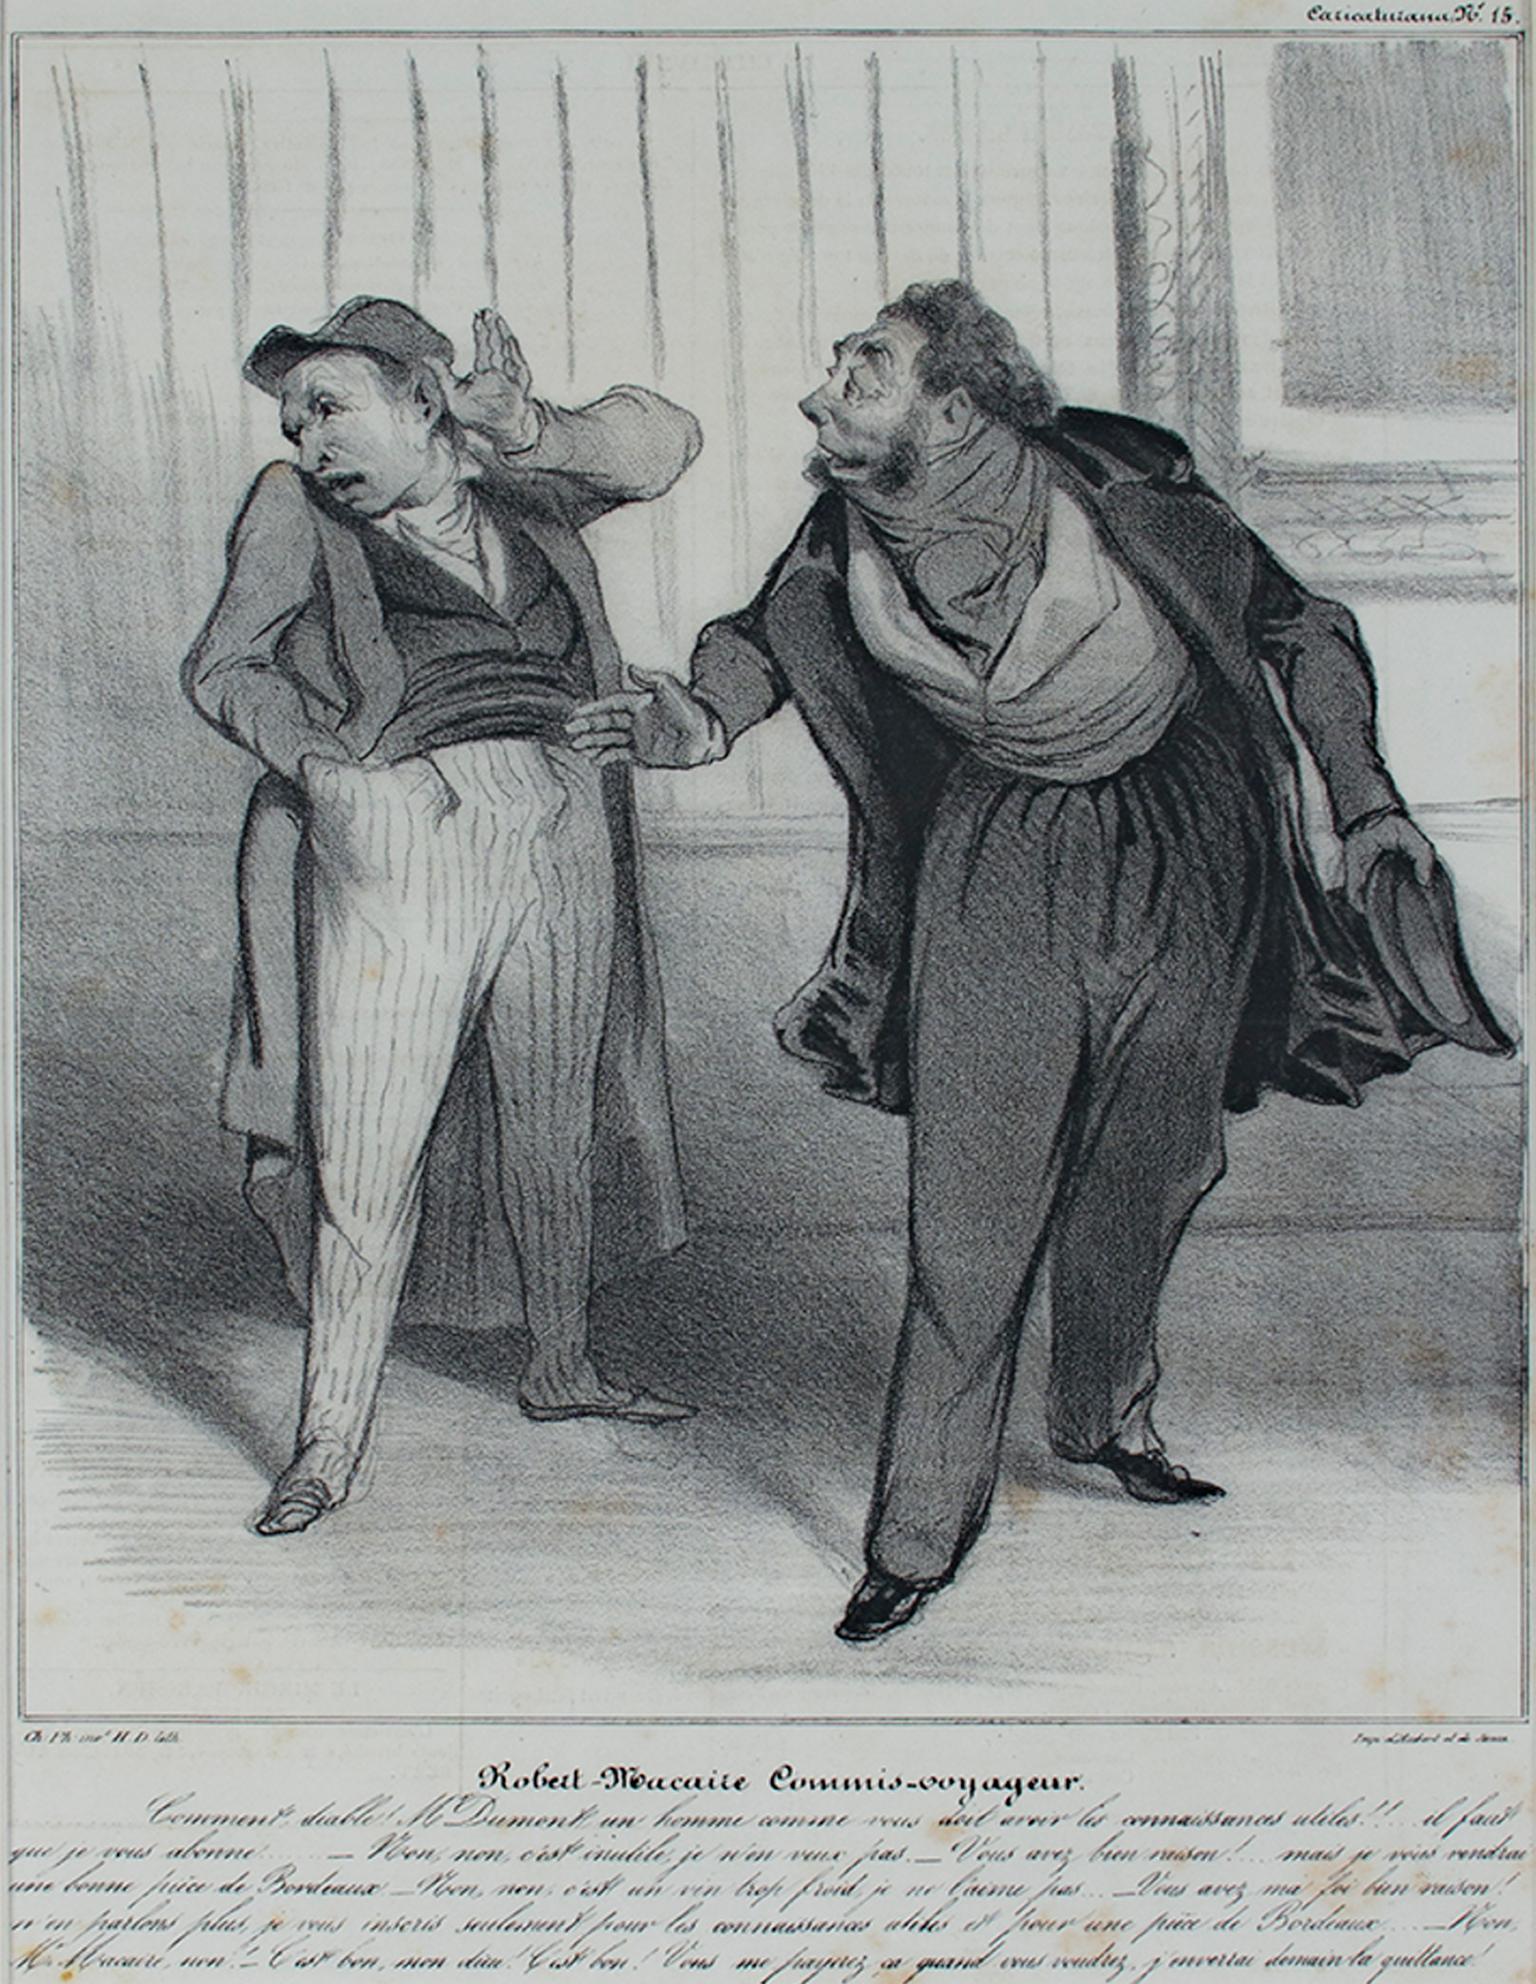 Print Honoré Daumier - "Robert The The Commis Voyageur, lithographie originale d'Honor Daumier